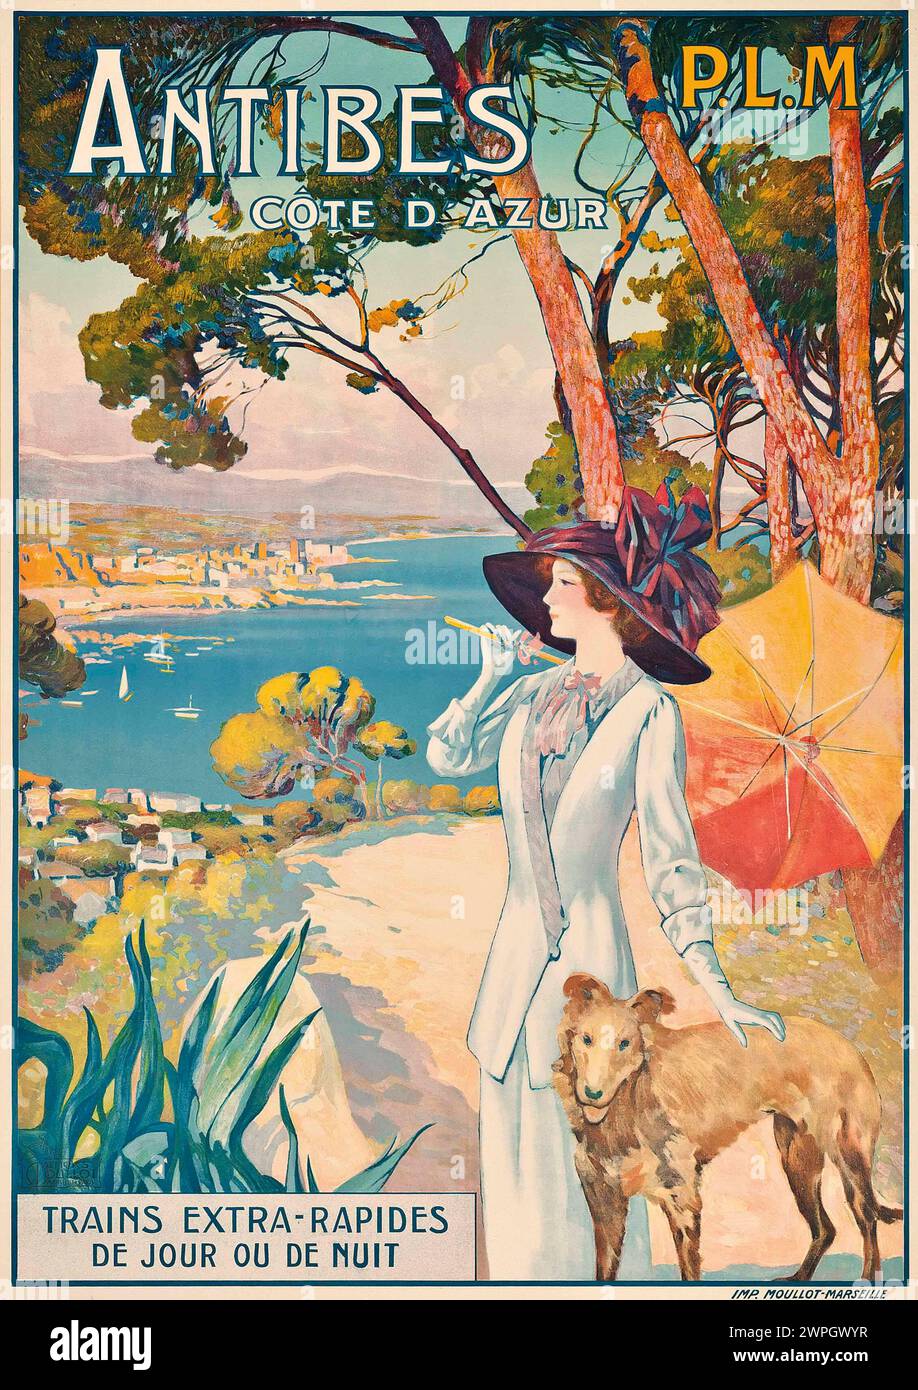 Affiche de voyage en train vintage pour Antibes, Côte d'Azur. Par David Dellepiane 1910 Banque D'Images